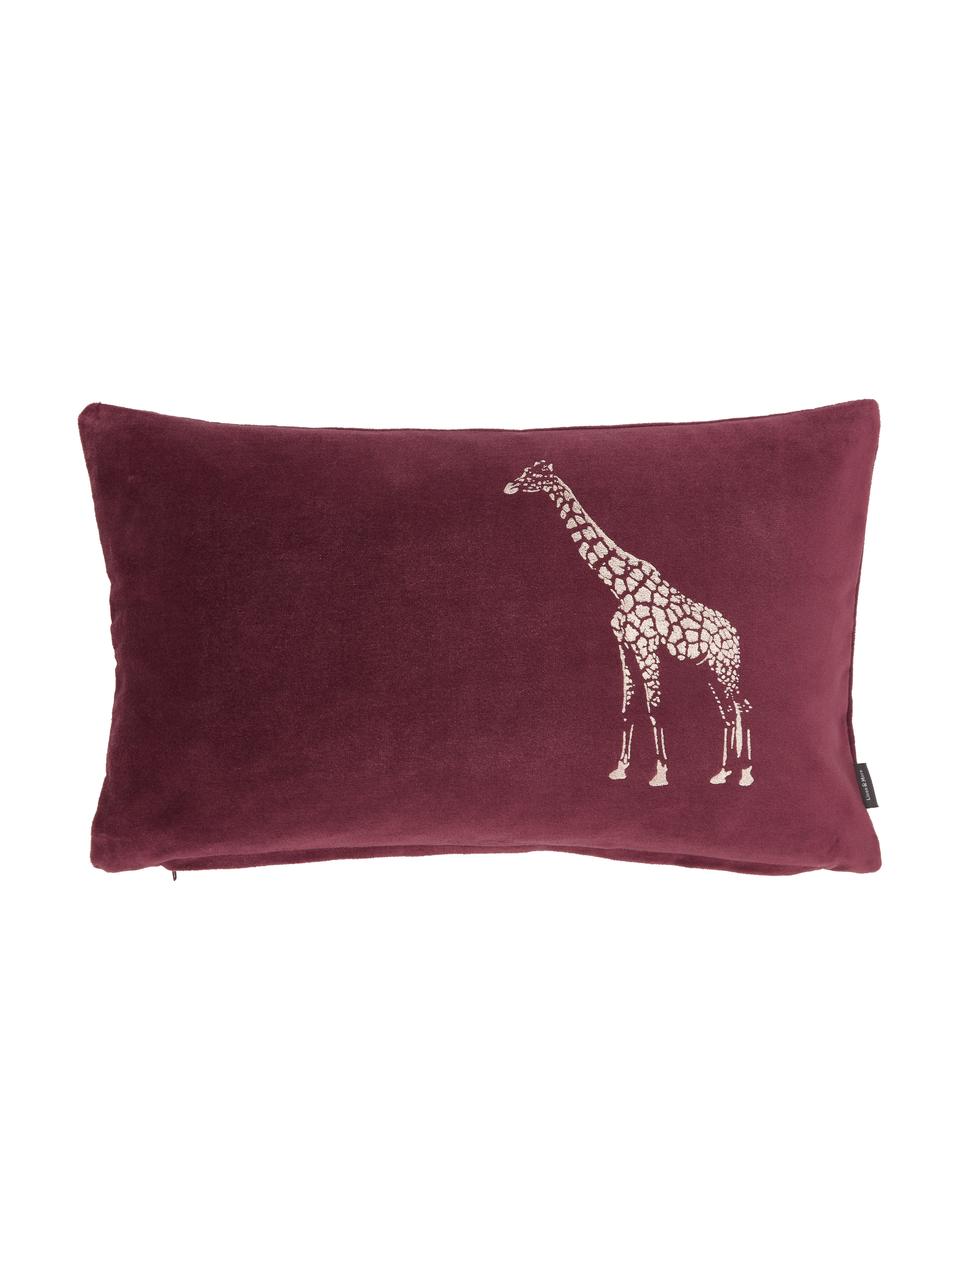 Poduszka z wypełnieniem Giraffe, Tapicerka: 100% bawełna, Odcienie bordo, odcienie złotego, S 30 x D 50 cm